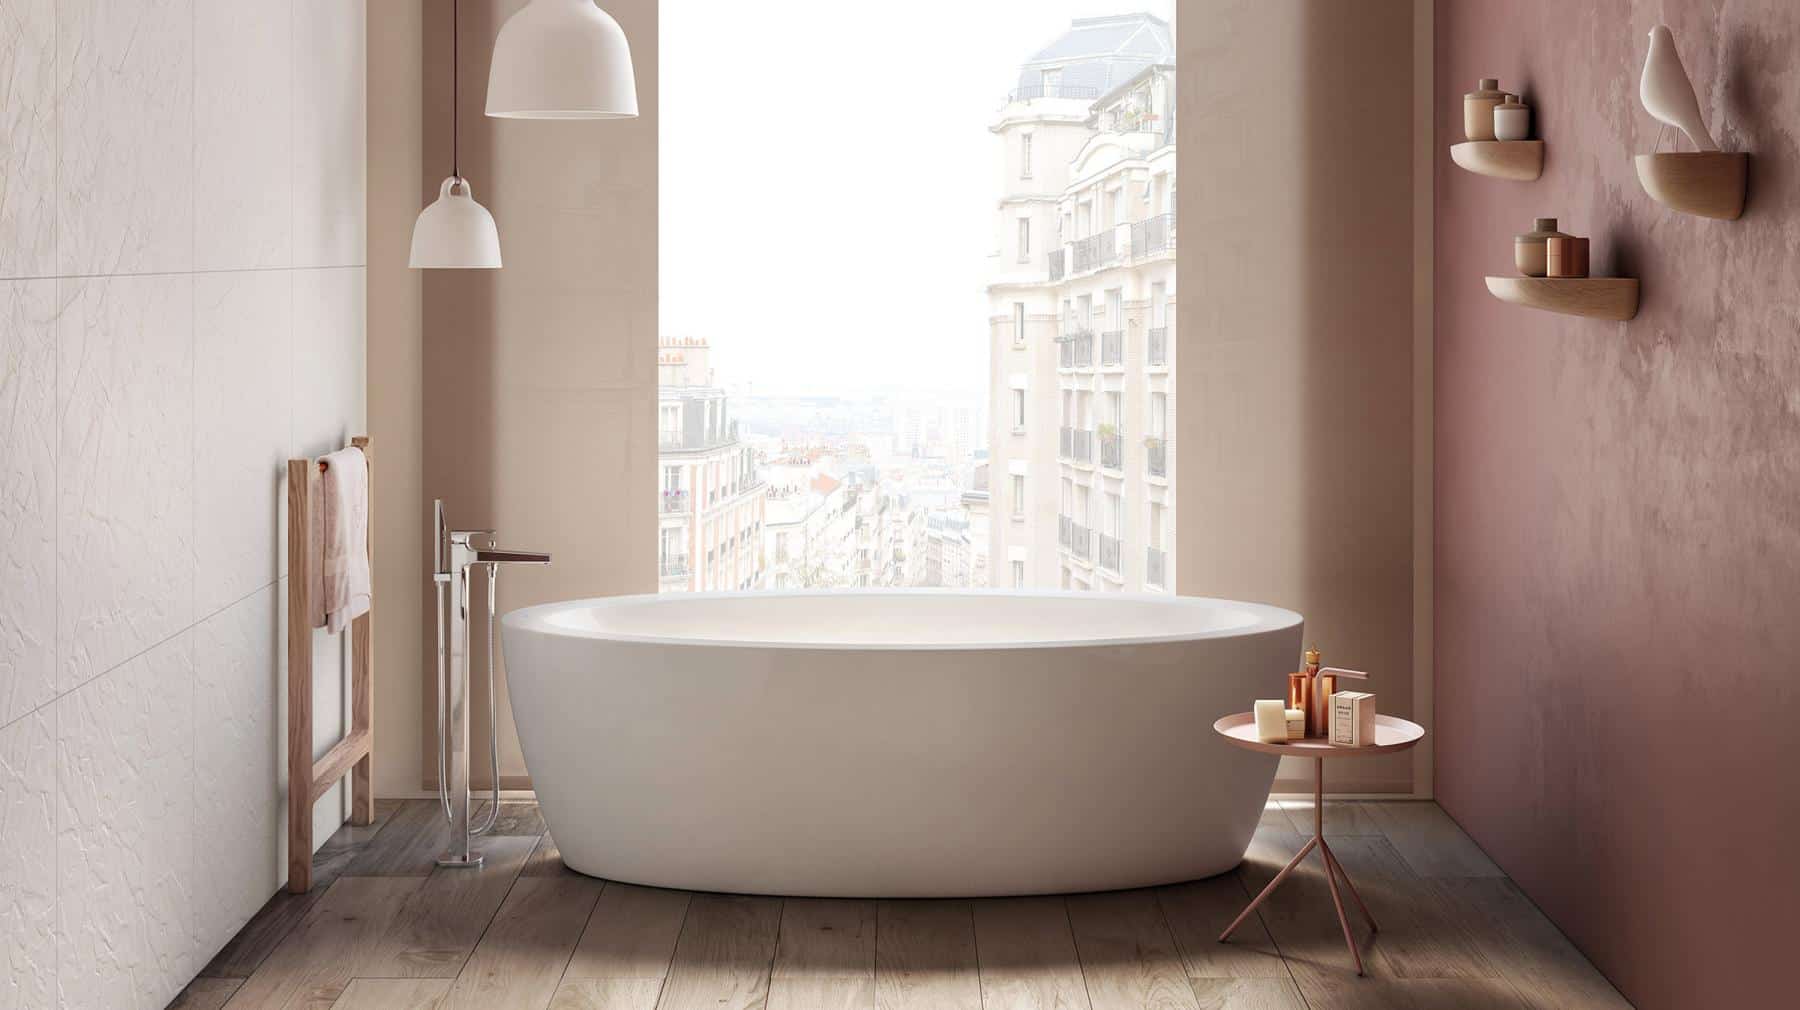 Roca free standing oval acrylic ،ia bathing tub